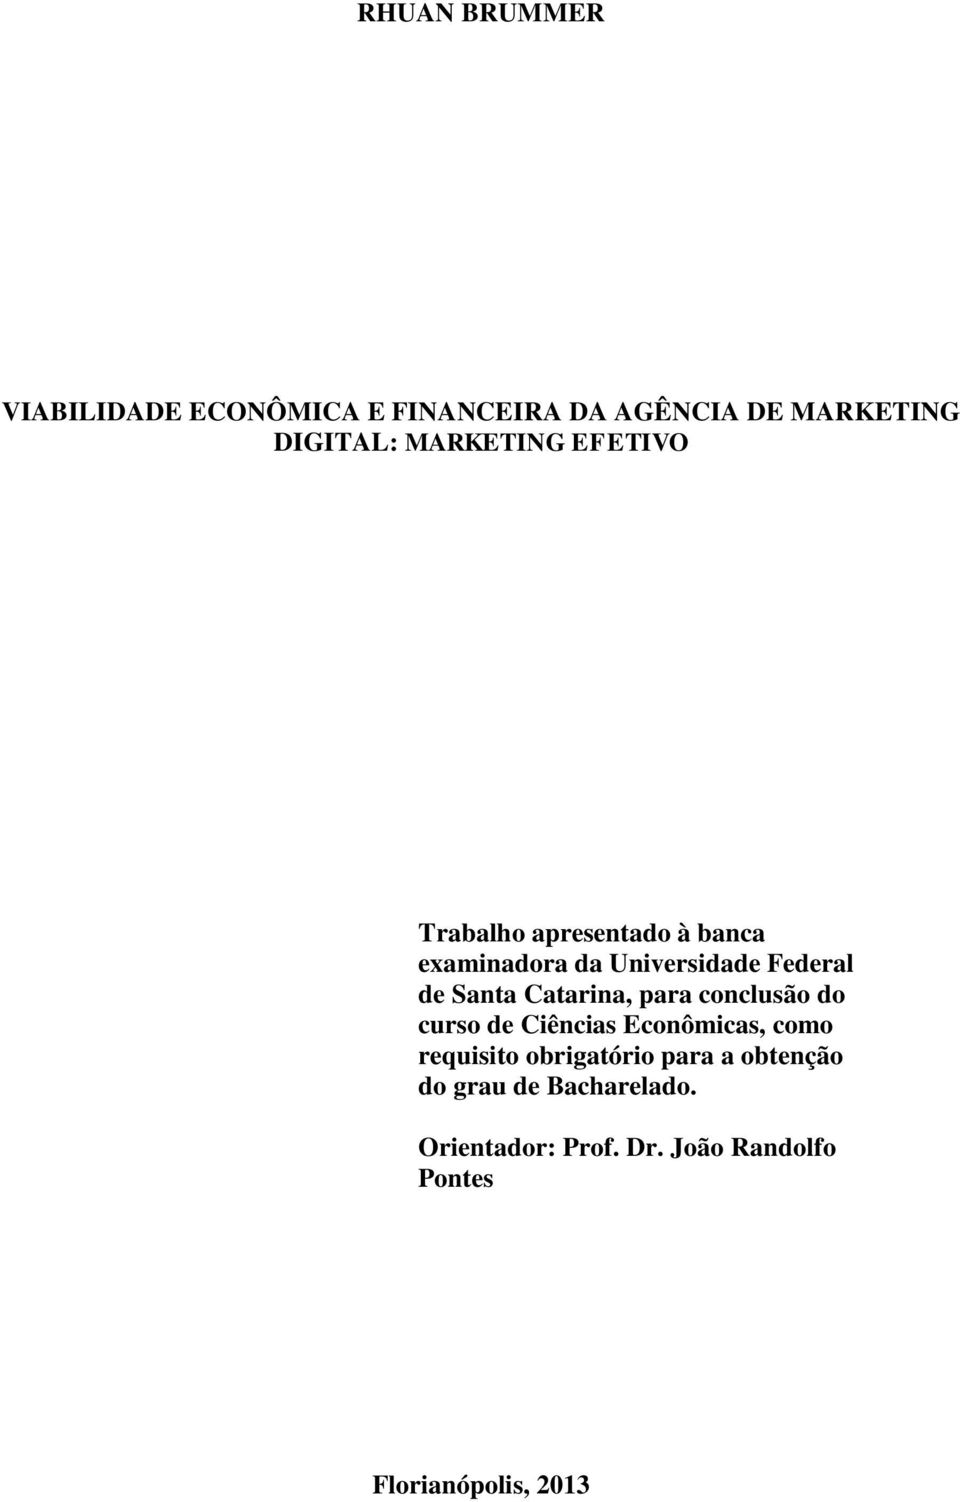 Santa Catarina, para conclusão do curso de Ciências Econômicas, como requisito obrigatório